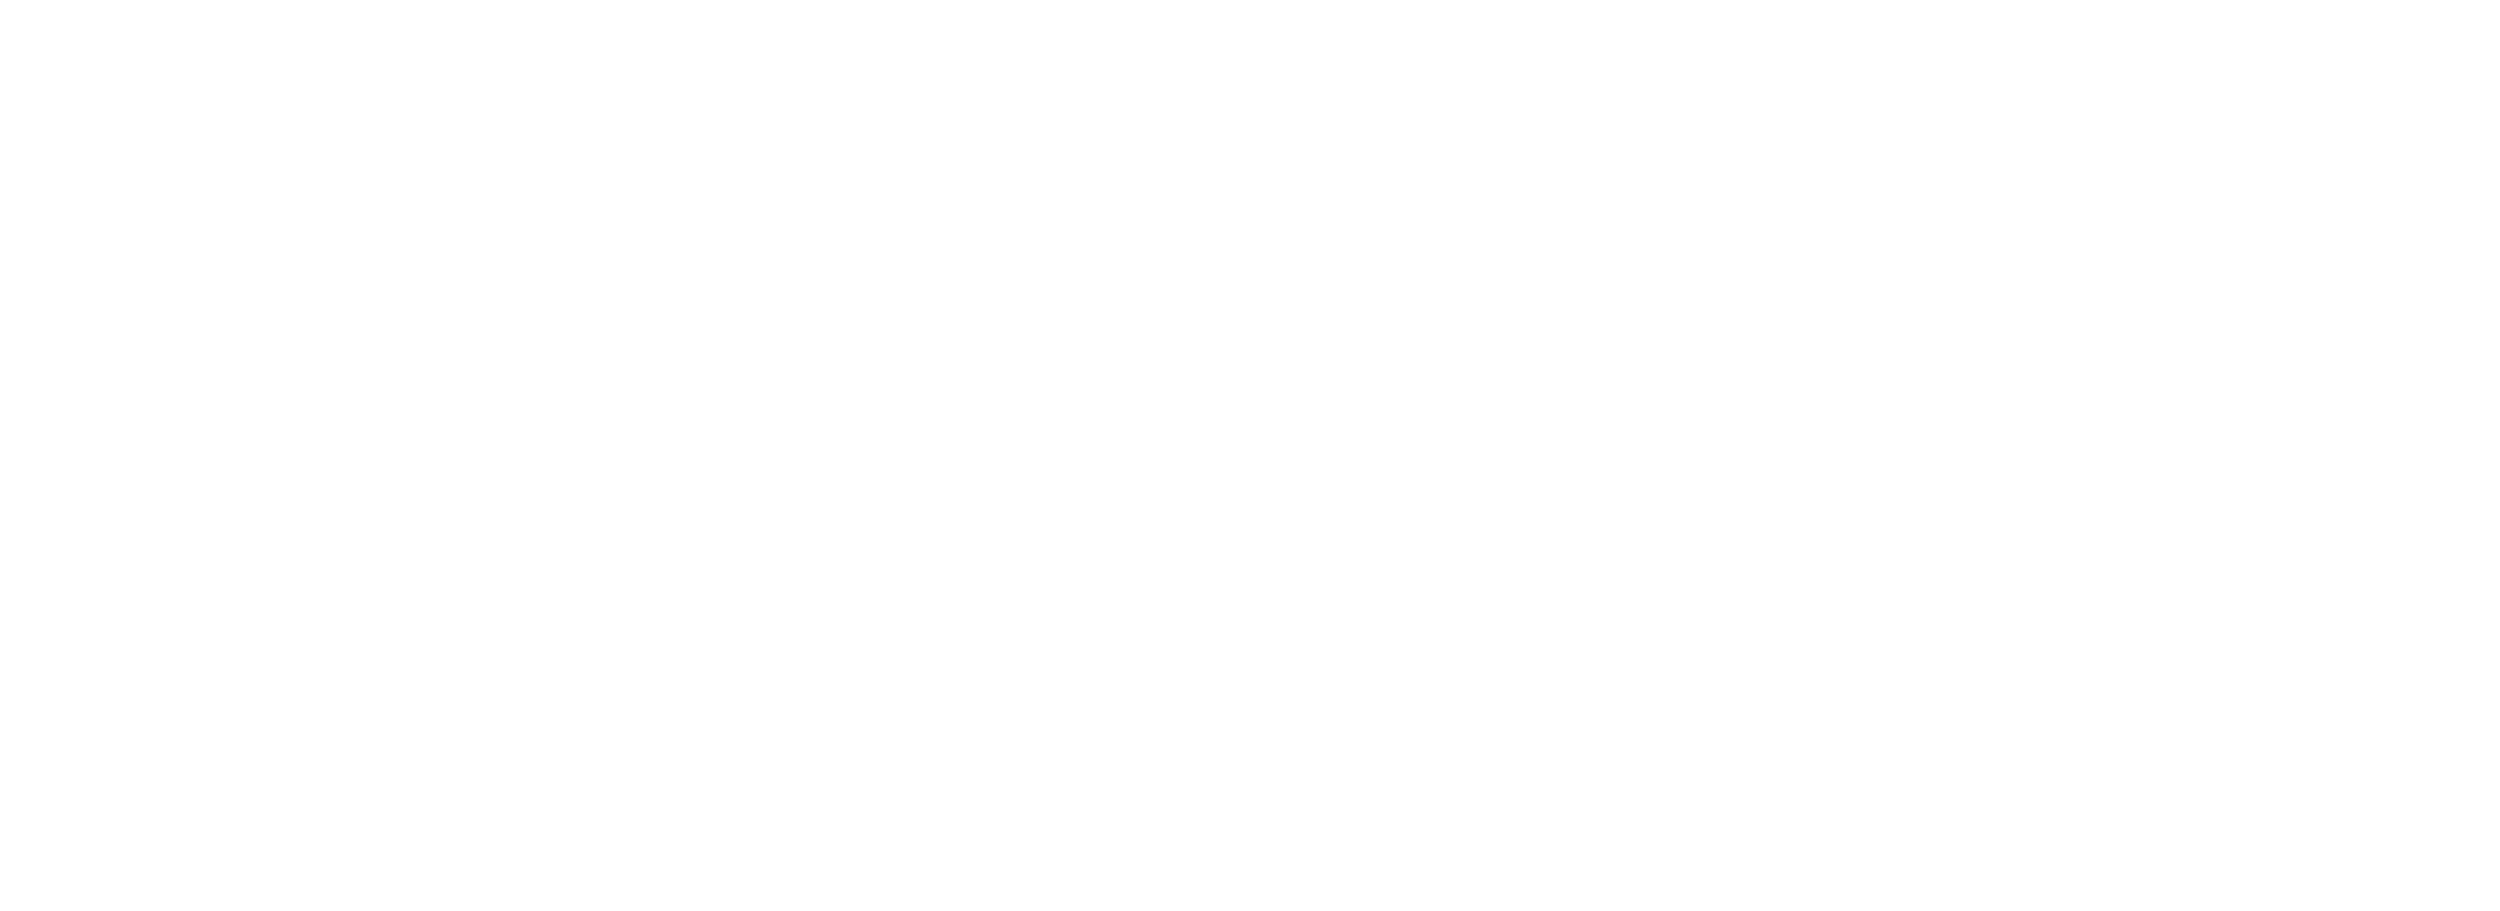 Friedman Transgender Program